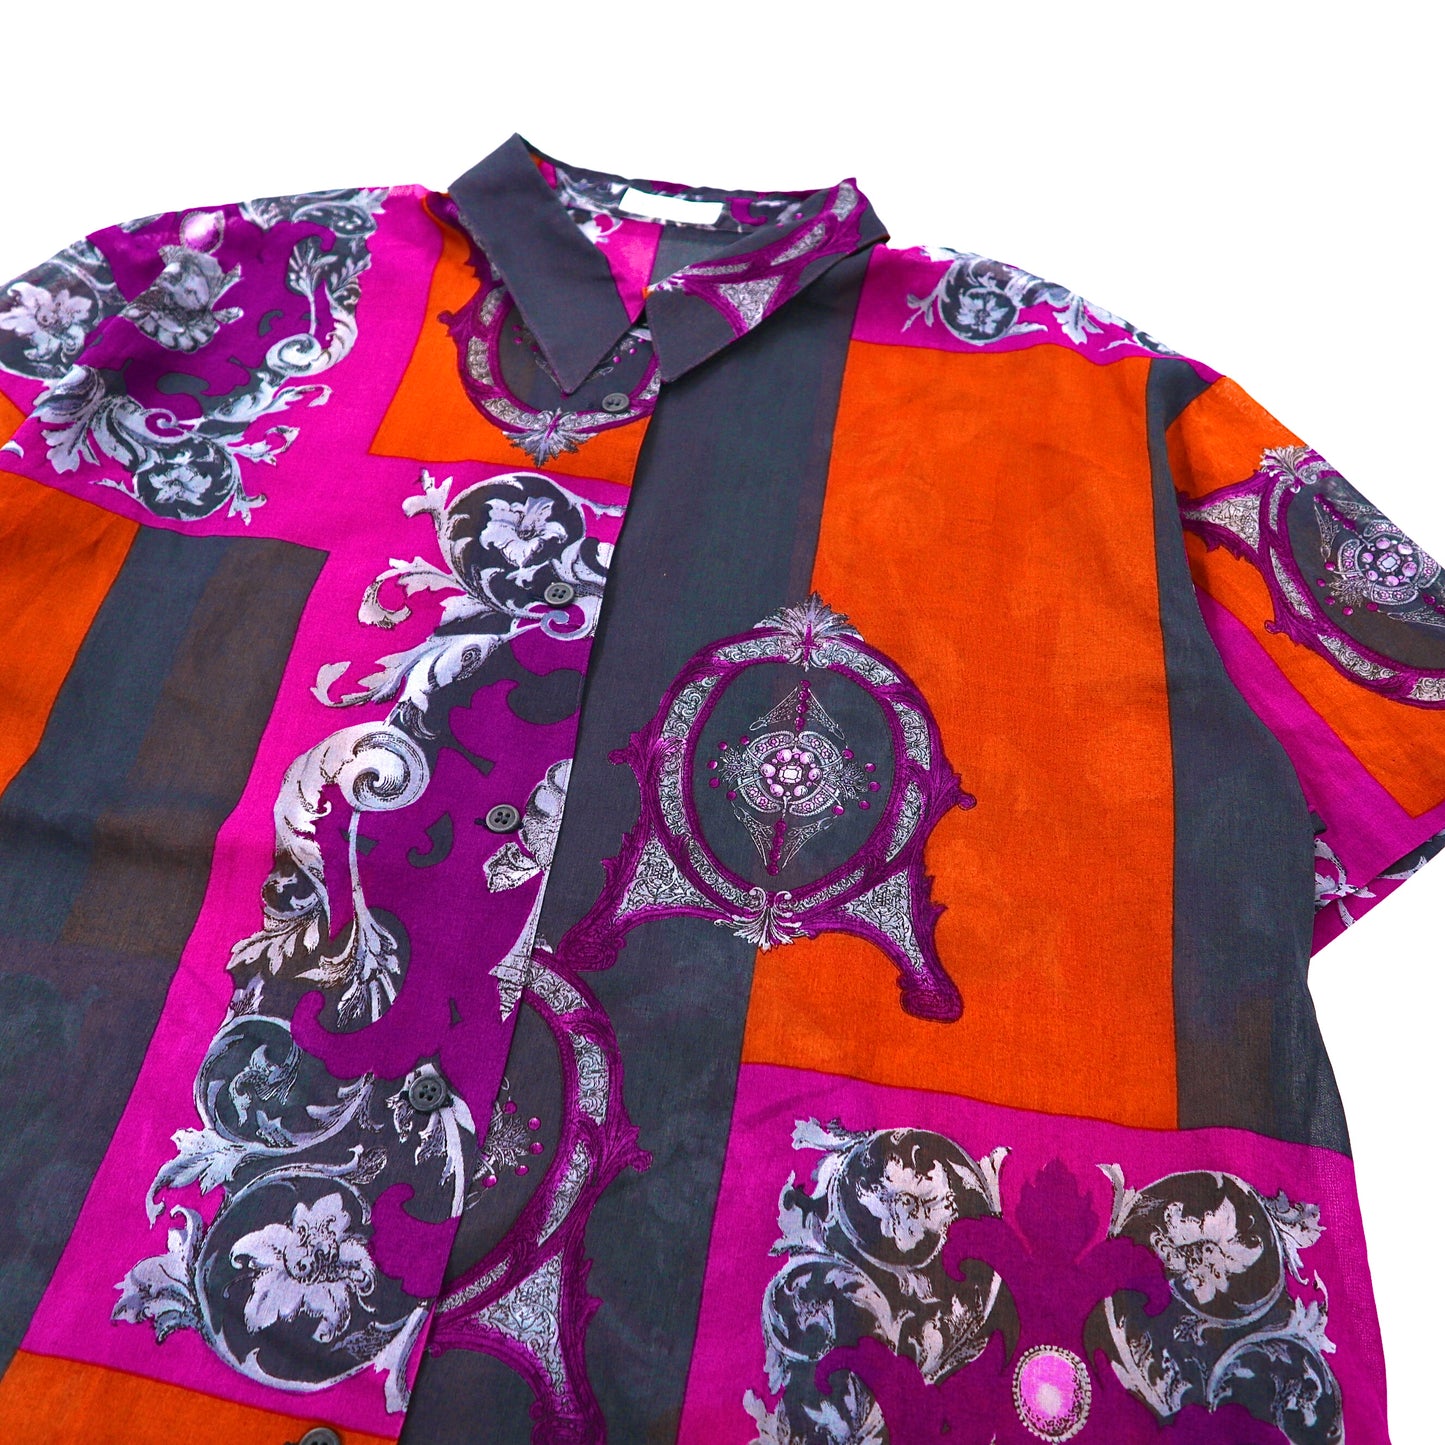 ROVETICA 半袖シースルーシャツ XL マルチカラー コットン 総柄 レトロ 日本製